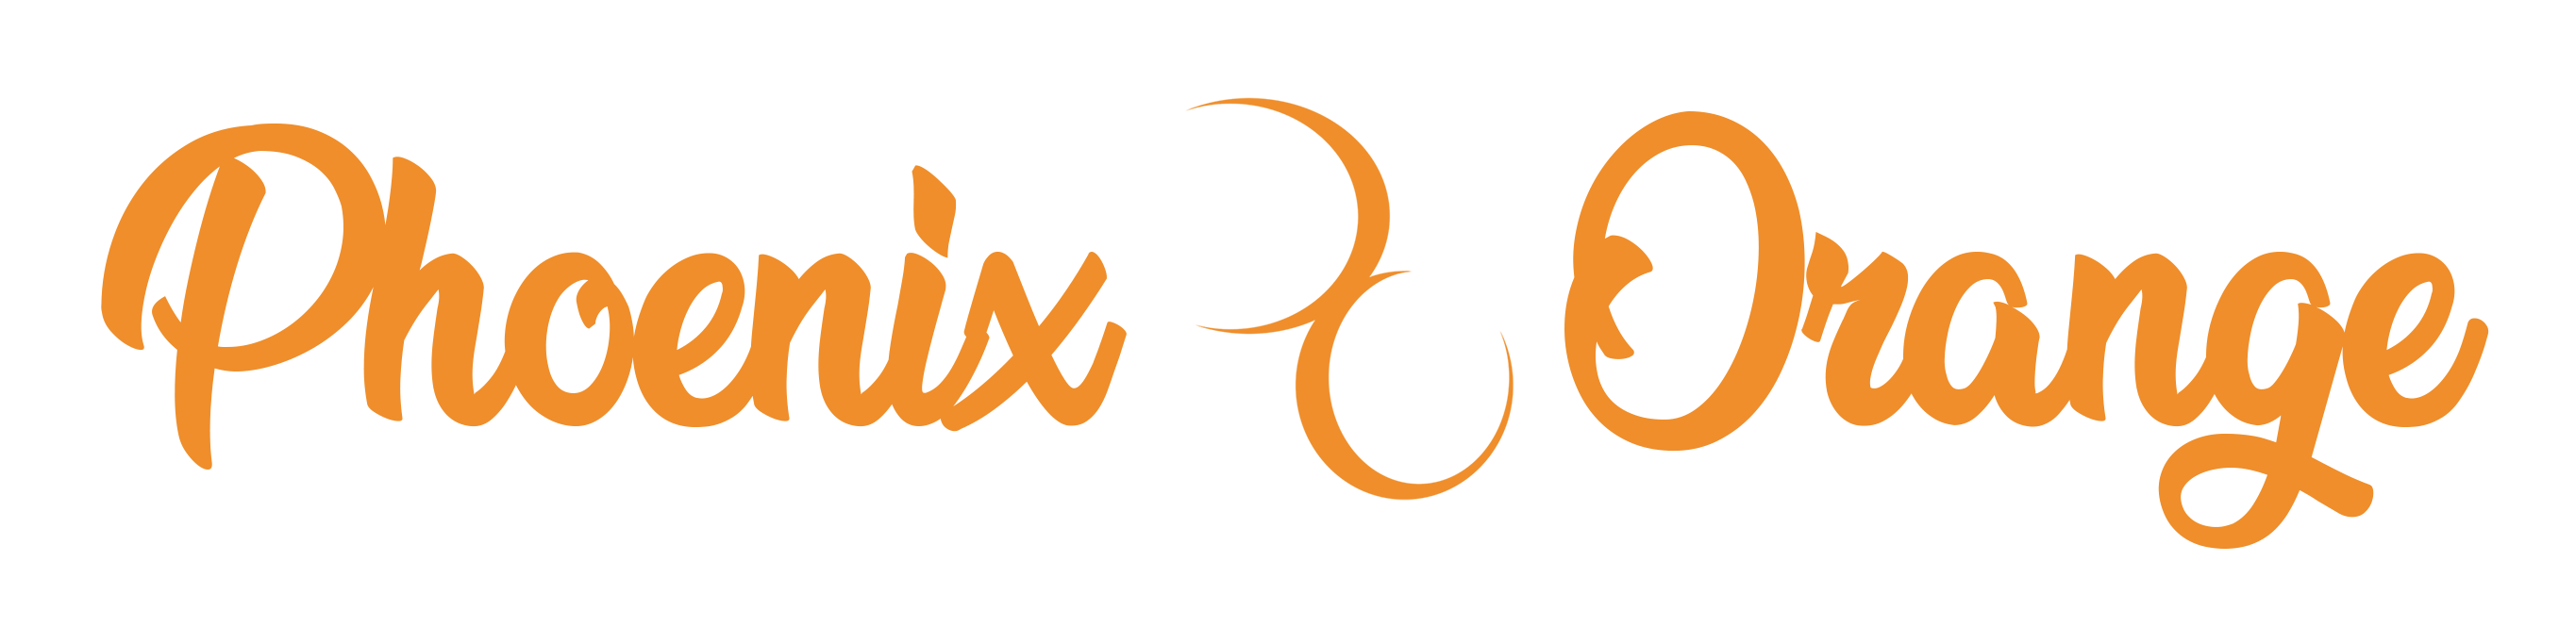 phoenix orange events fantasy photographer logo